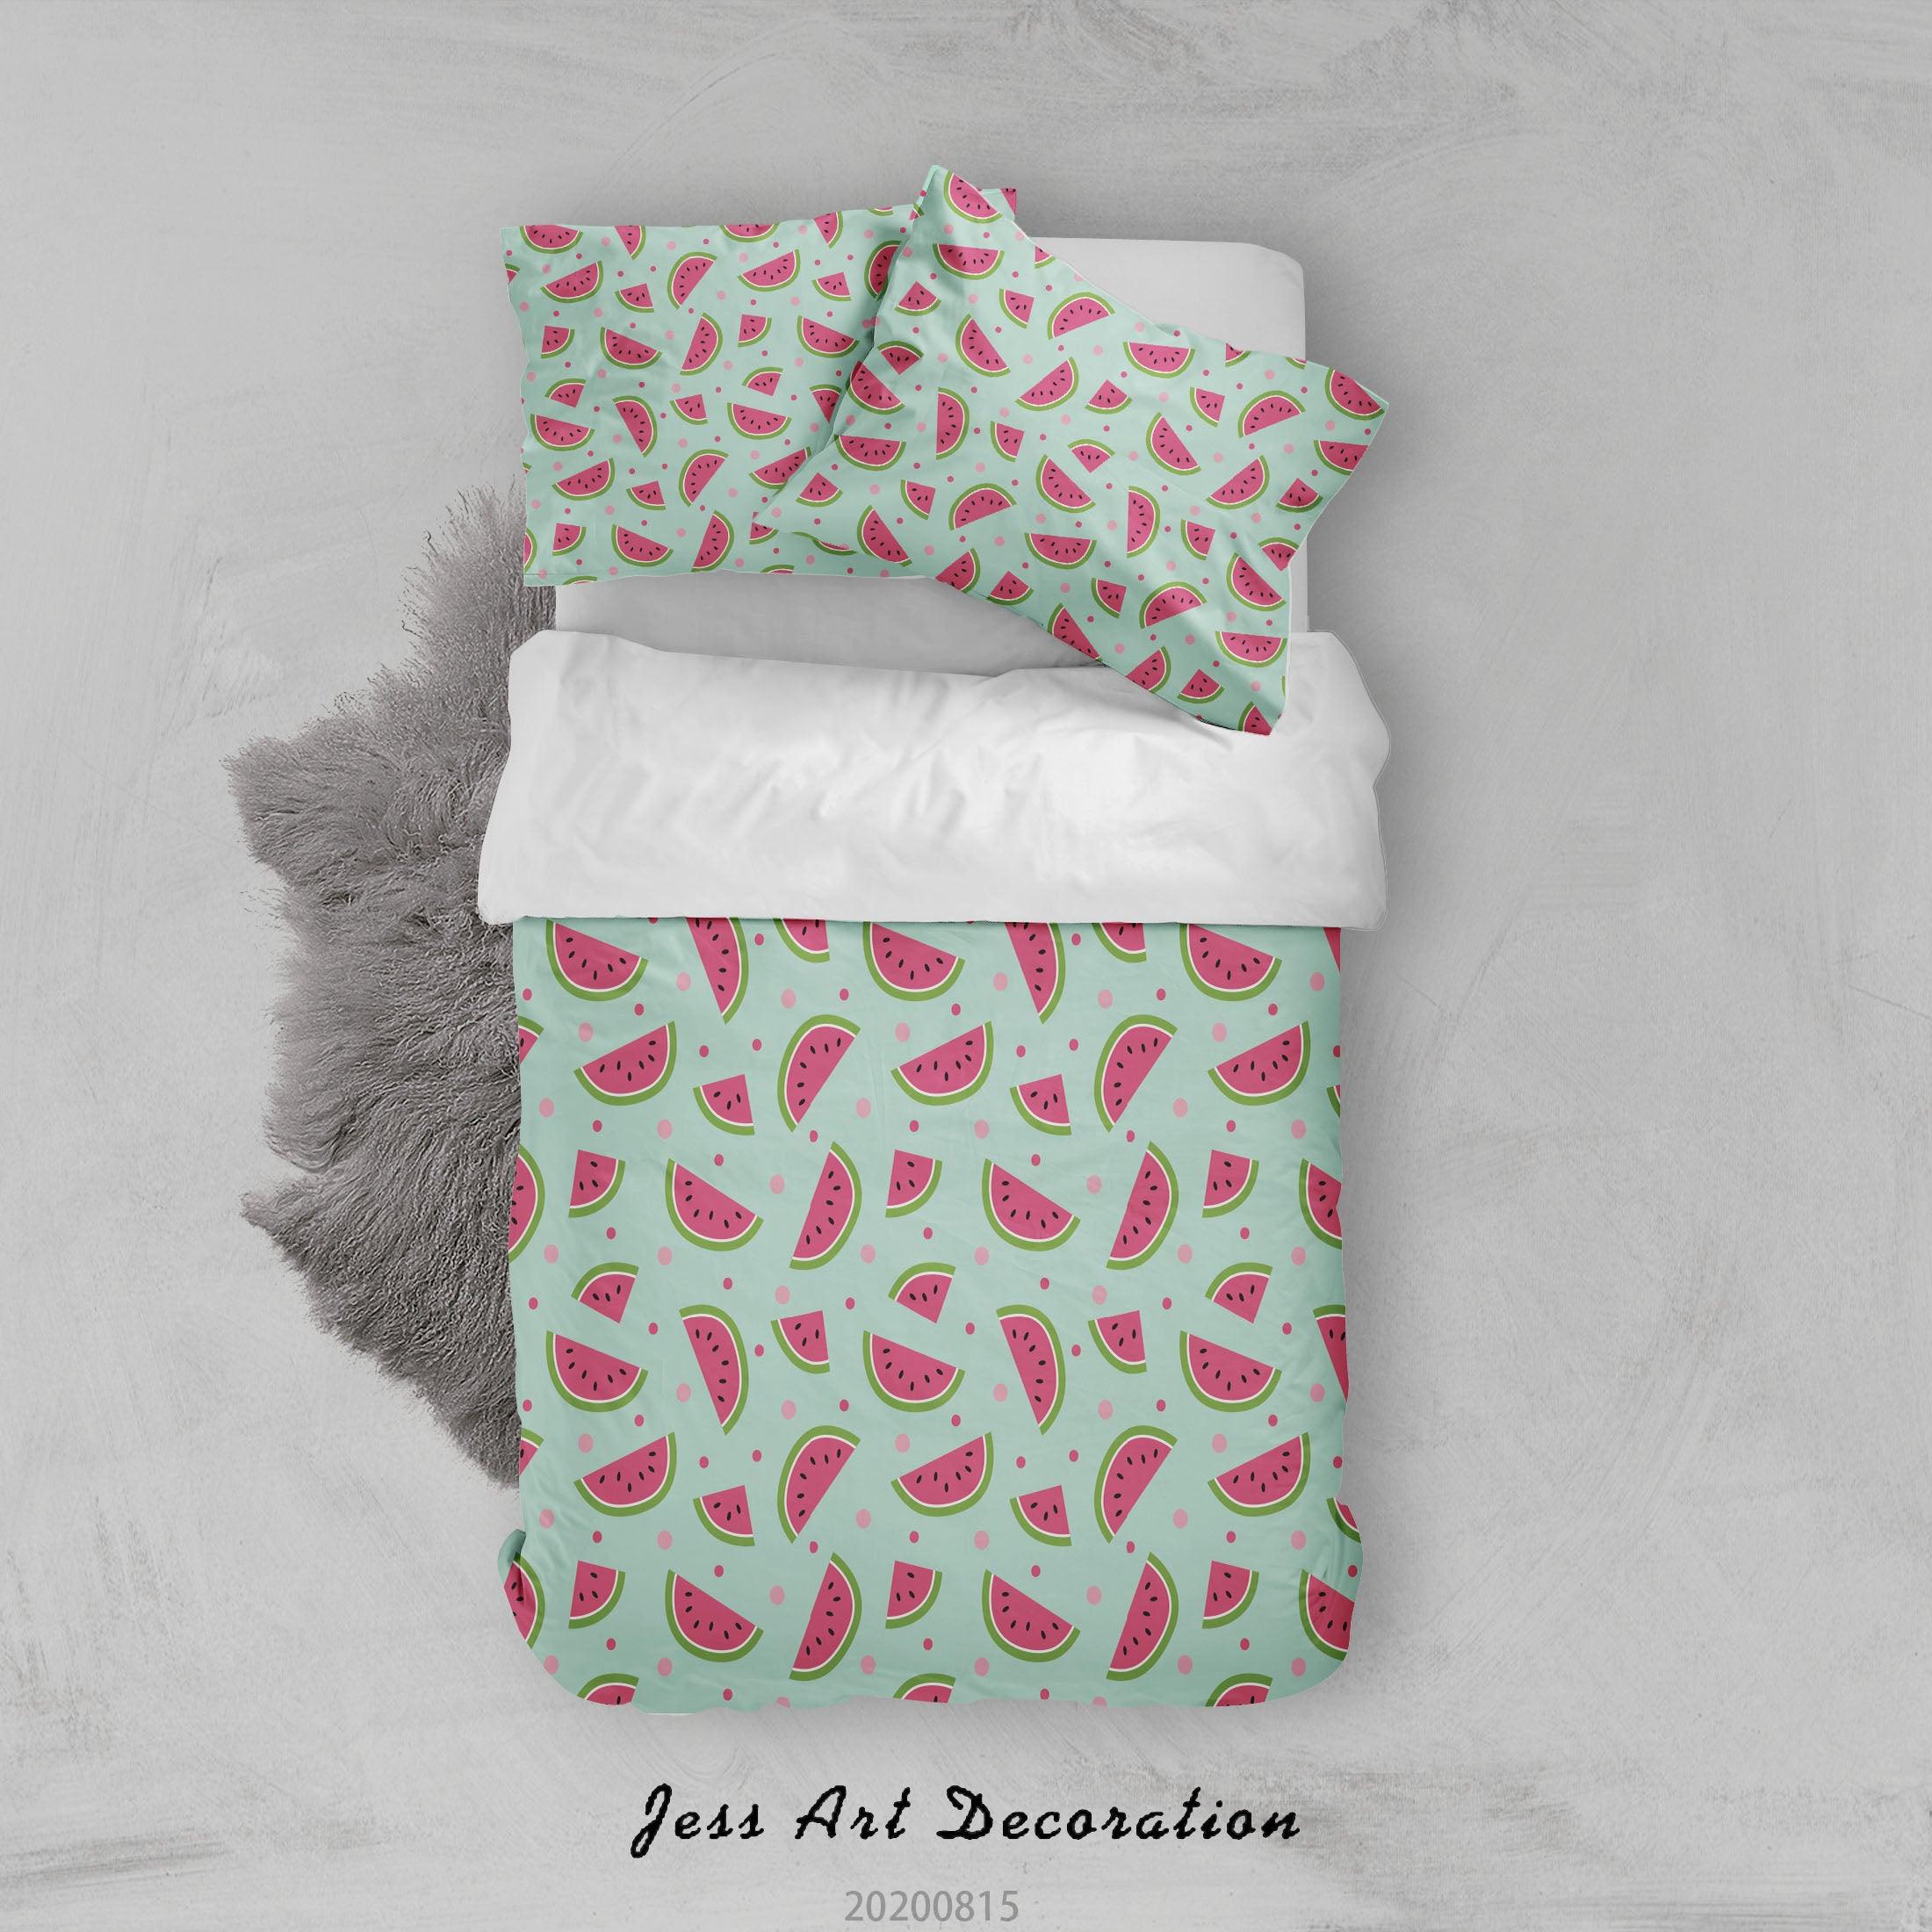 3D Watermelon Fruity Blue Quilt Cover Set Bedding Set Duvet Cover Pillowcases LXL- Jess Art Decoration